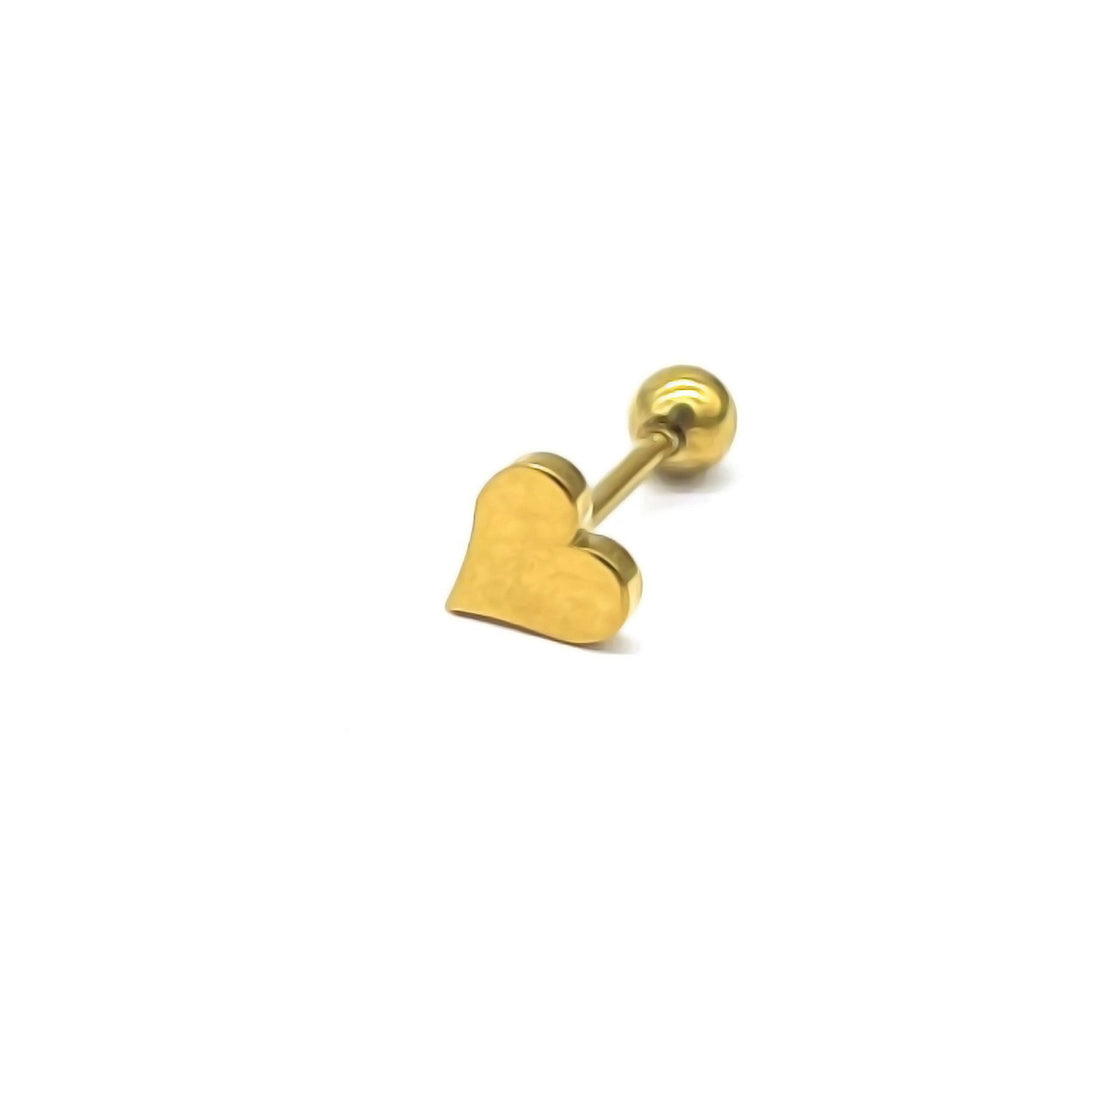 Hart piercing goud. Gouden piercing met heart er op. De piercing is van roestvrij staal en waterproof. Afmetingen: 3mm